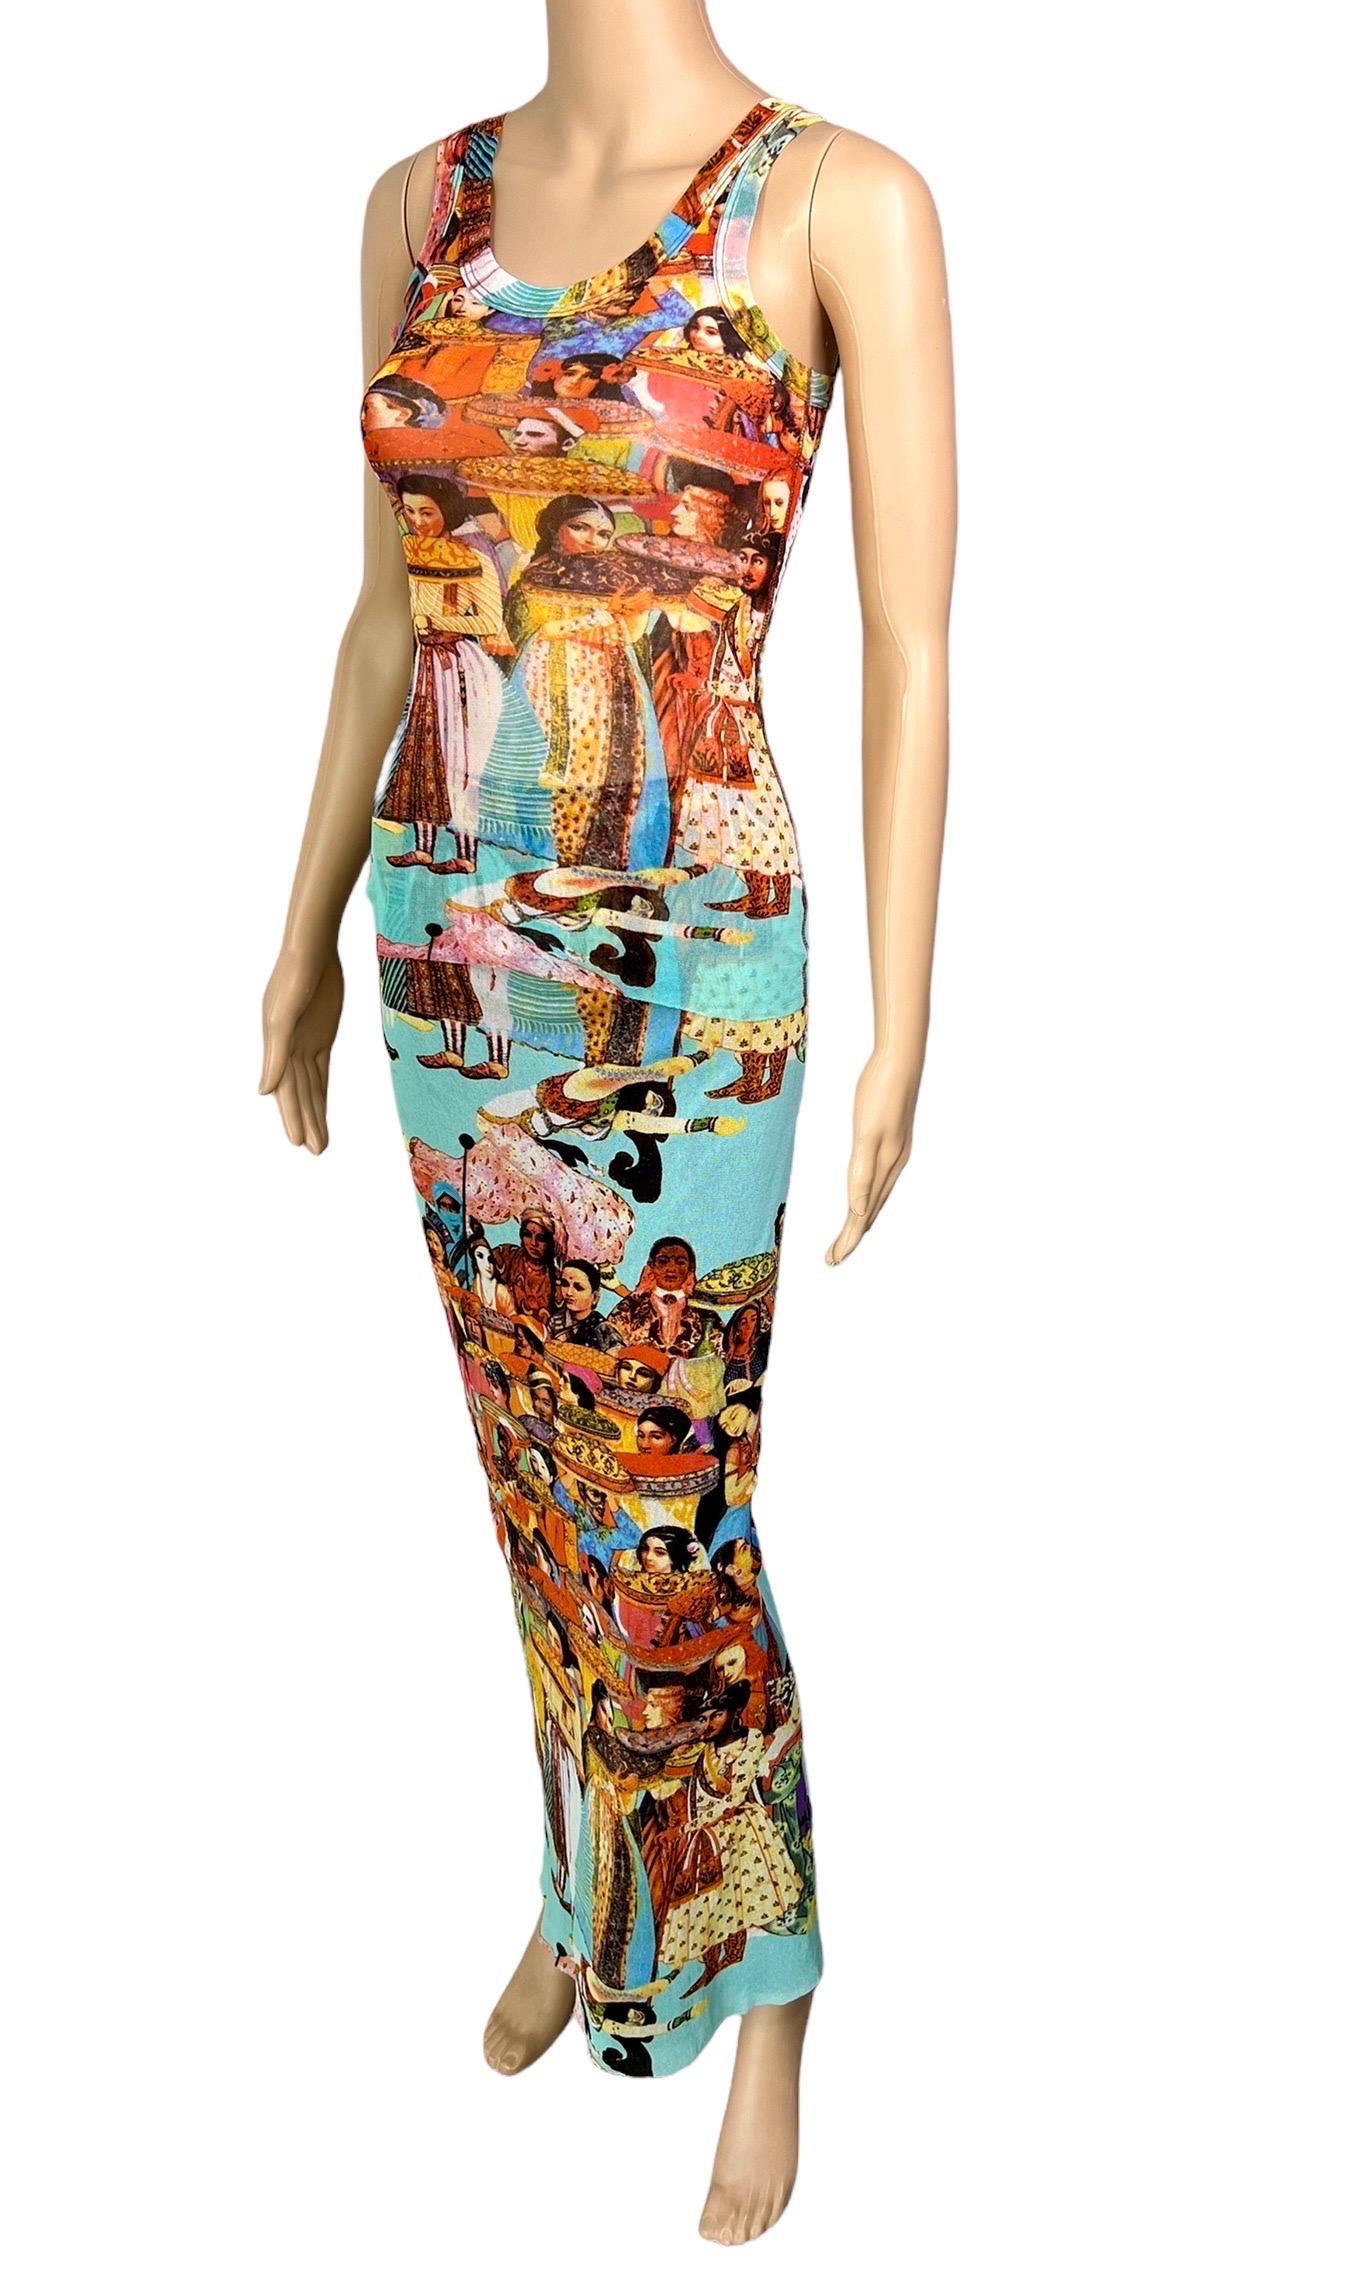 Jean Paul Gaultier Soleil Vintage Faces People Print Sheer Mesh Top & Skirt Ensemble 2 Piece Set Size S



